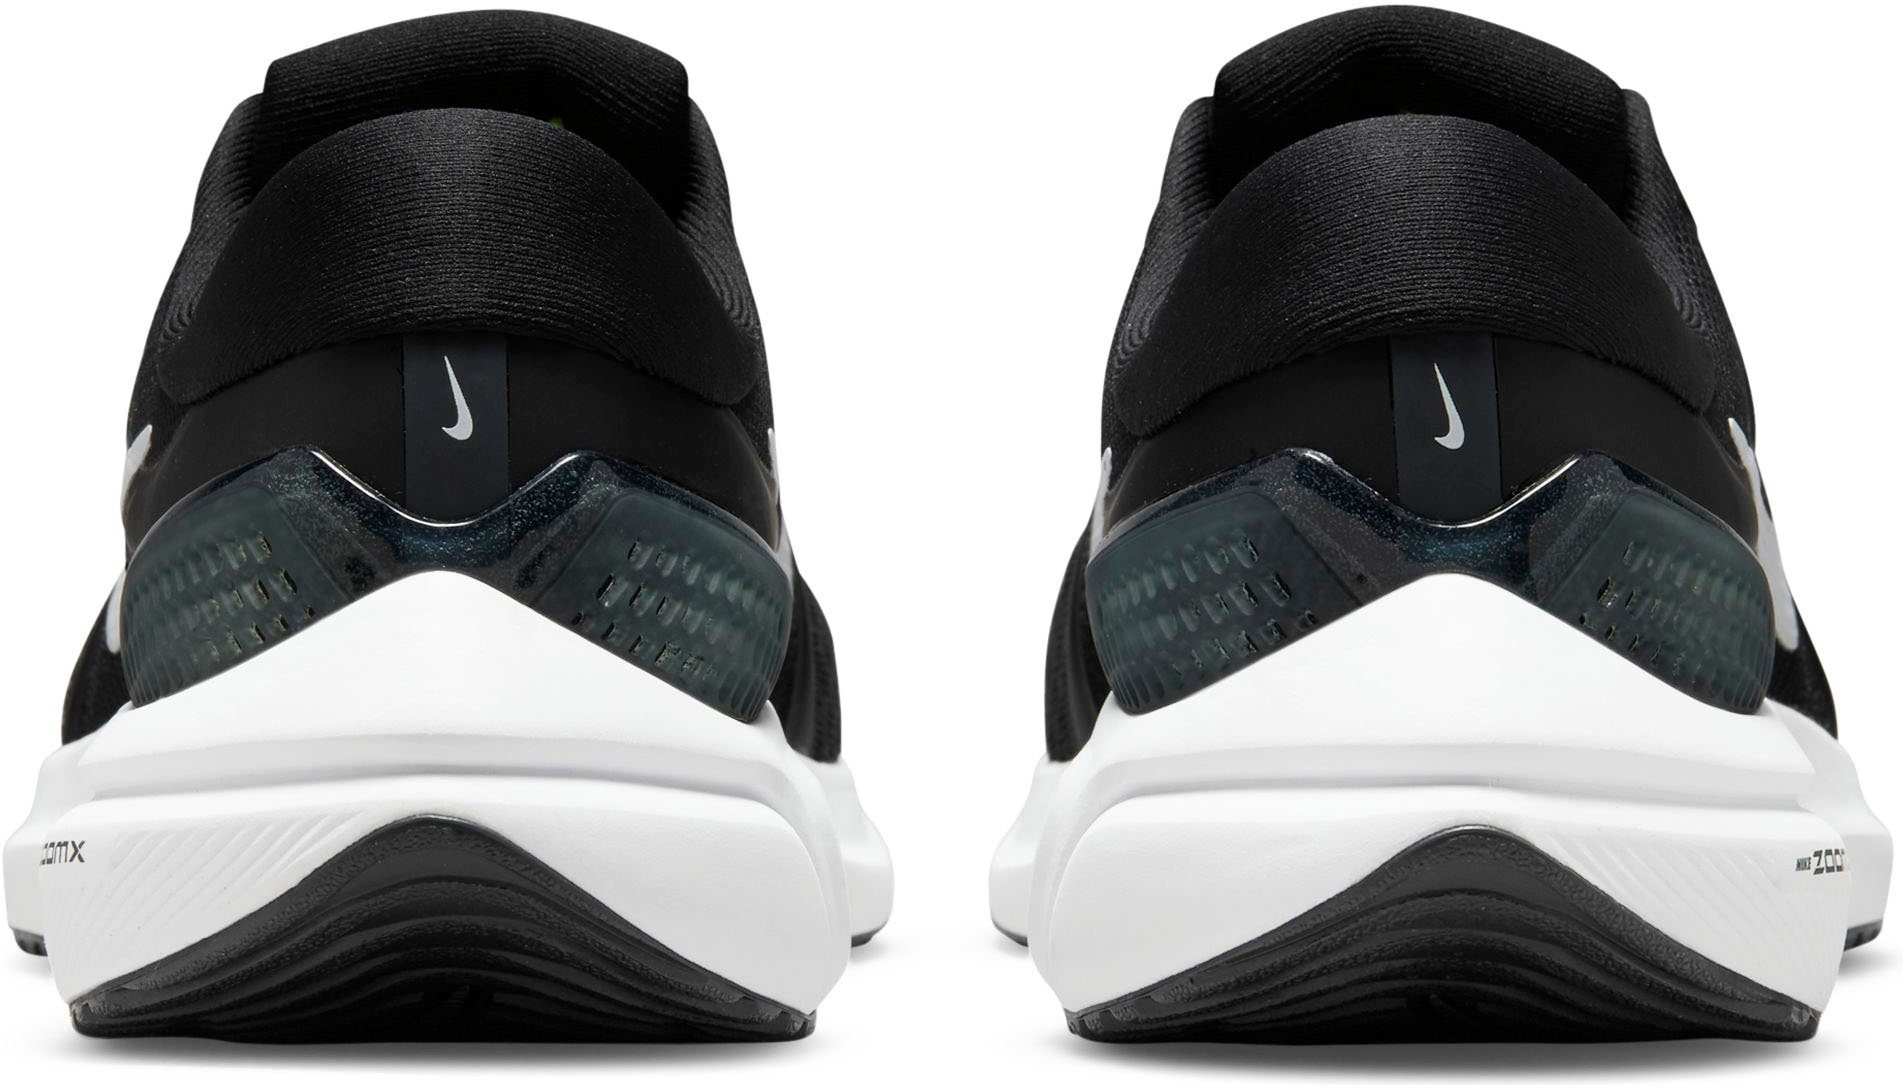 16 Nike schwarz-weiß VOMERO ZOOM AIR Laufschuh